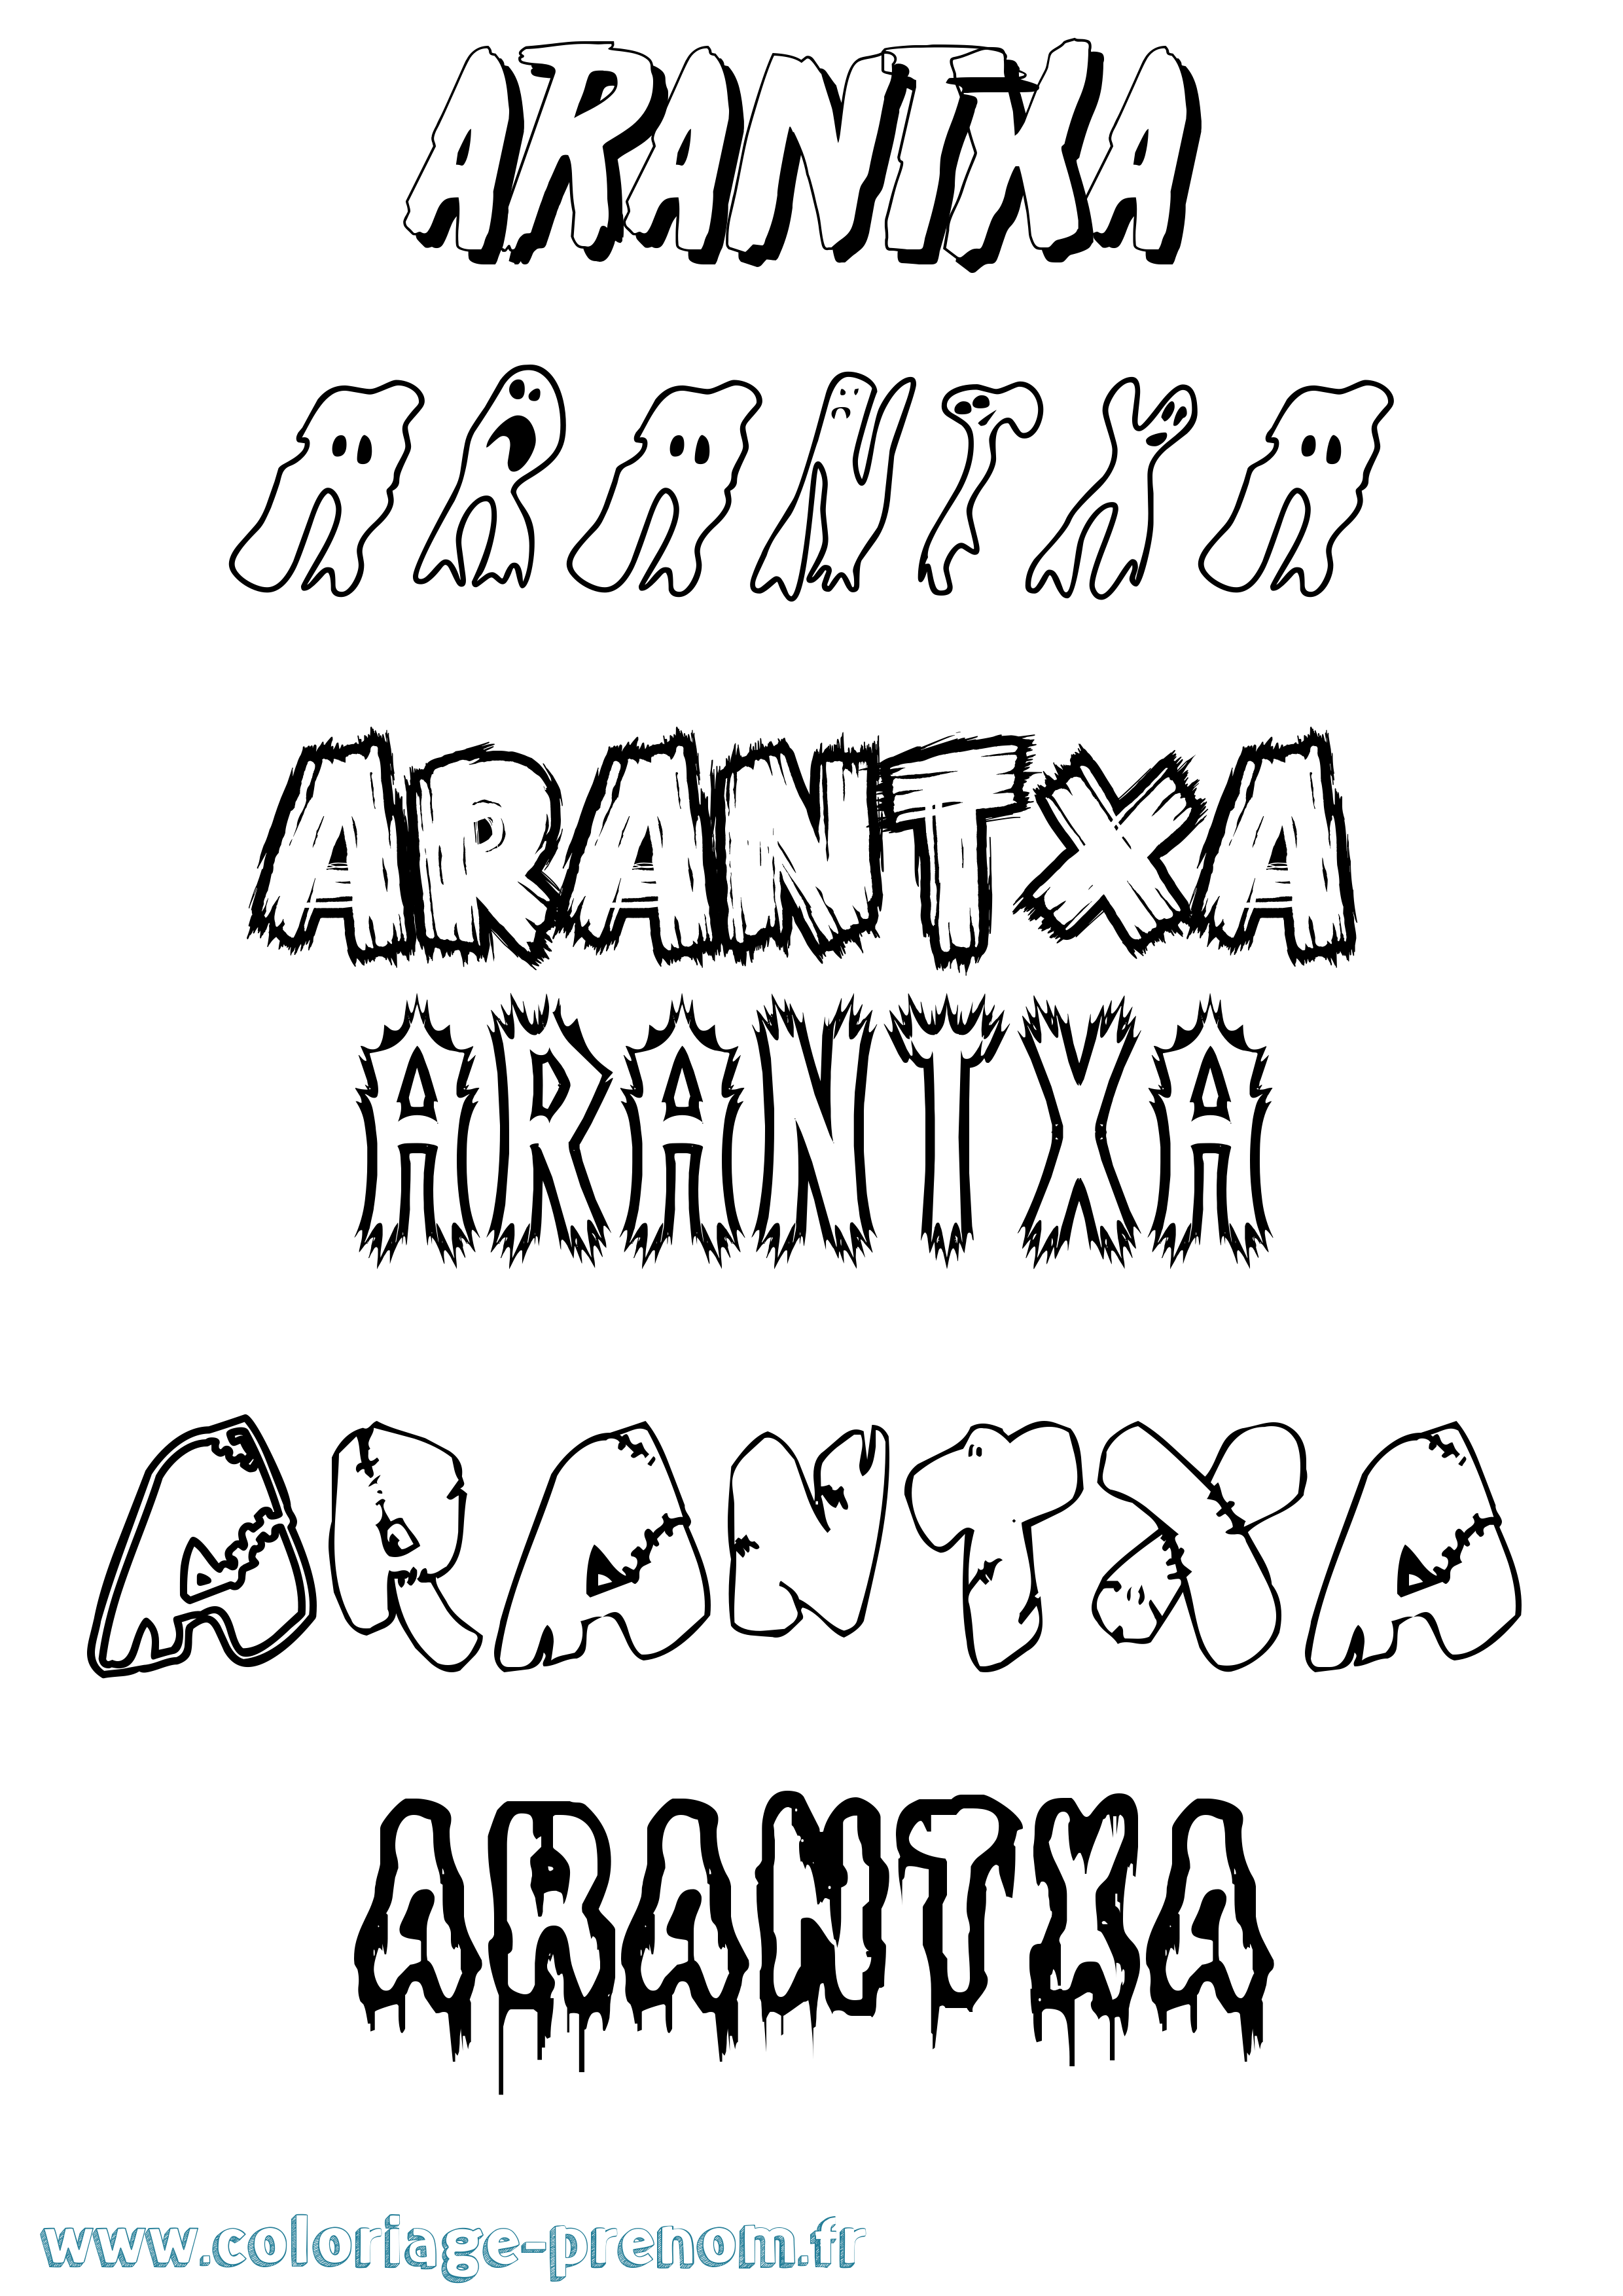 Coloriage prénom Arantxa Frisson